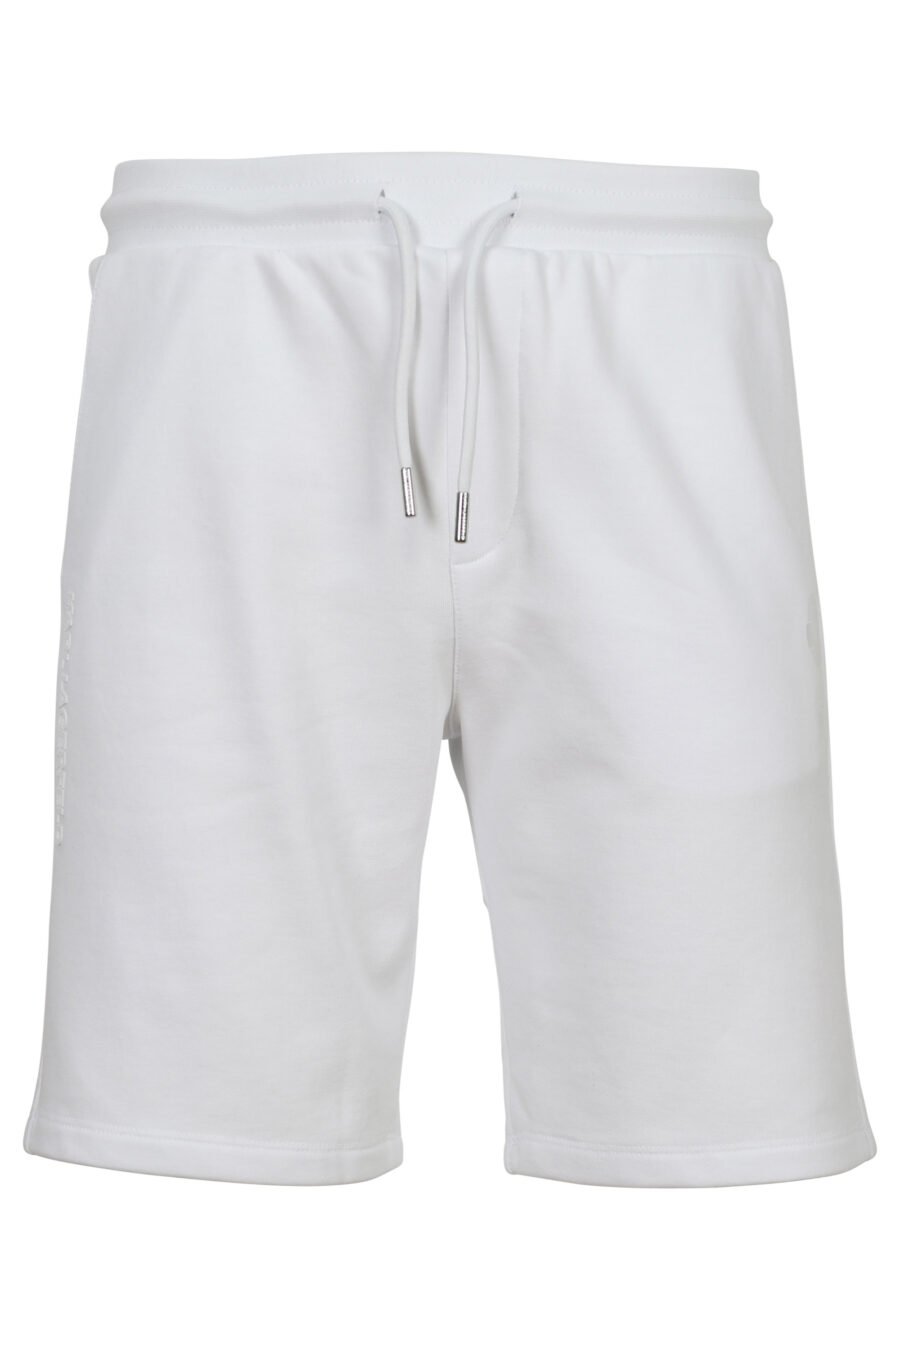 Pantalón de chándal corto blanco con minilogo azul en goma - 4062226782234